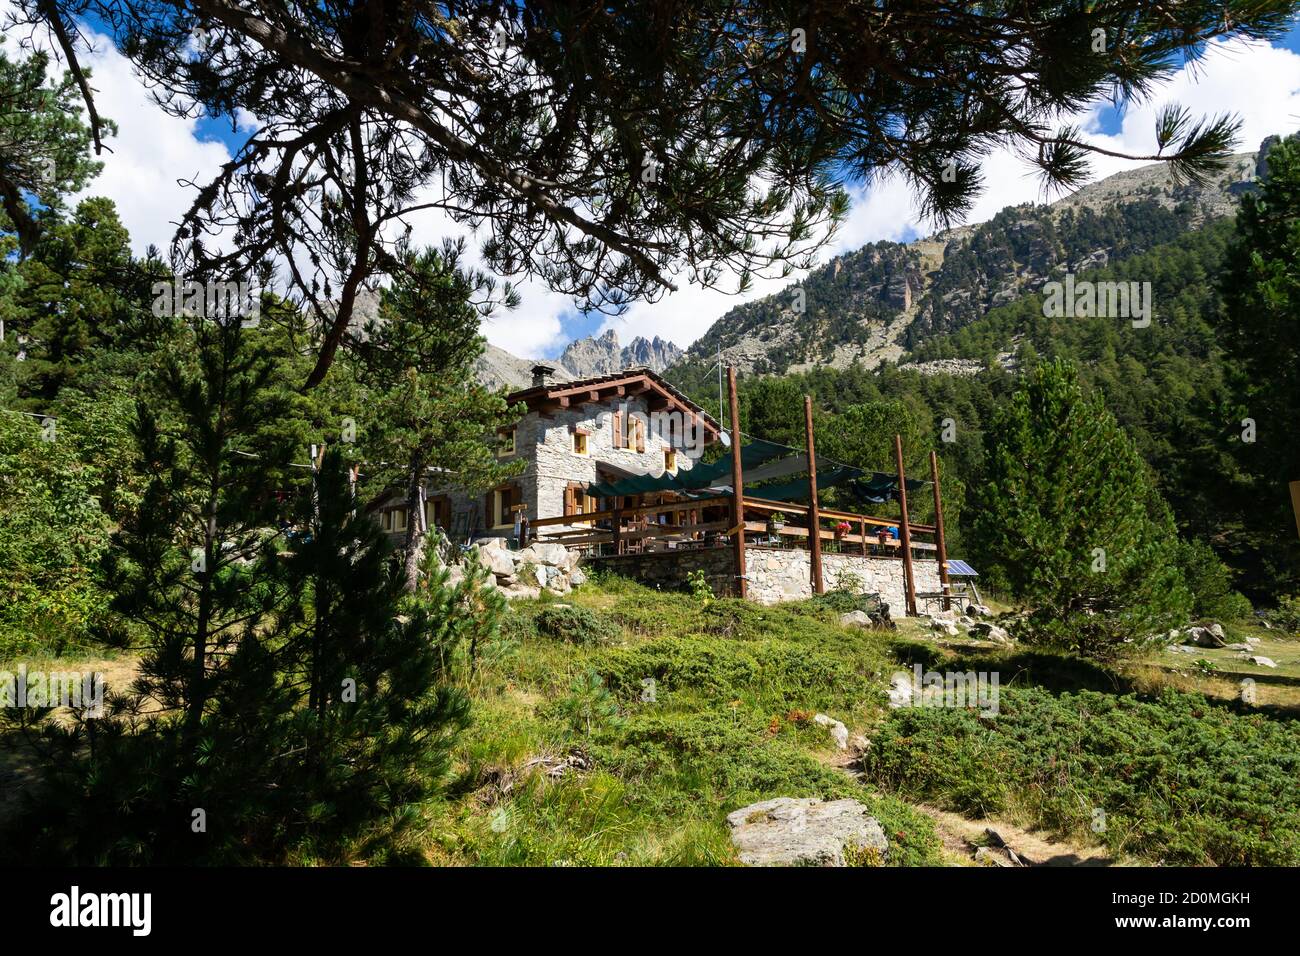 Bagnour Hütte im Varaita Tal in der Provinz Cuneo. Stockfoto